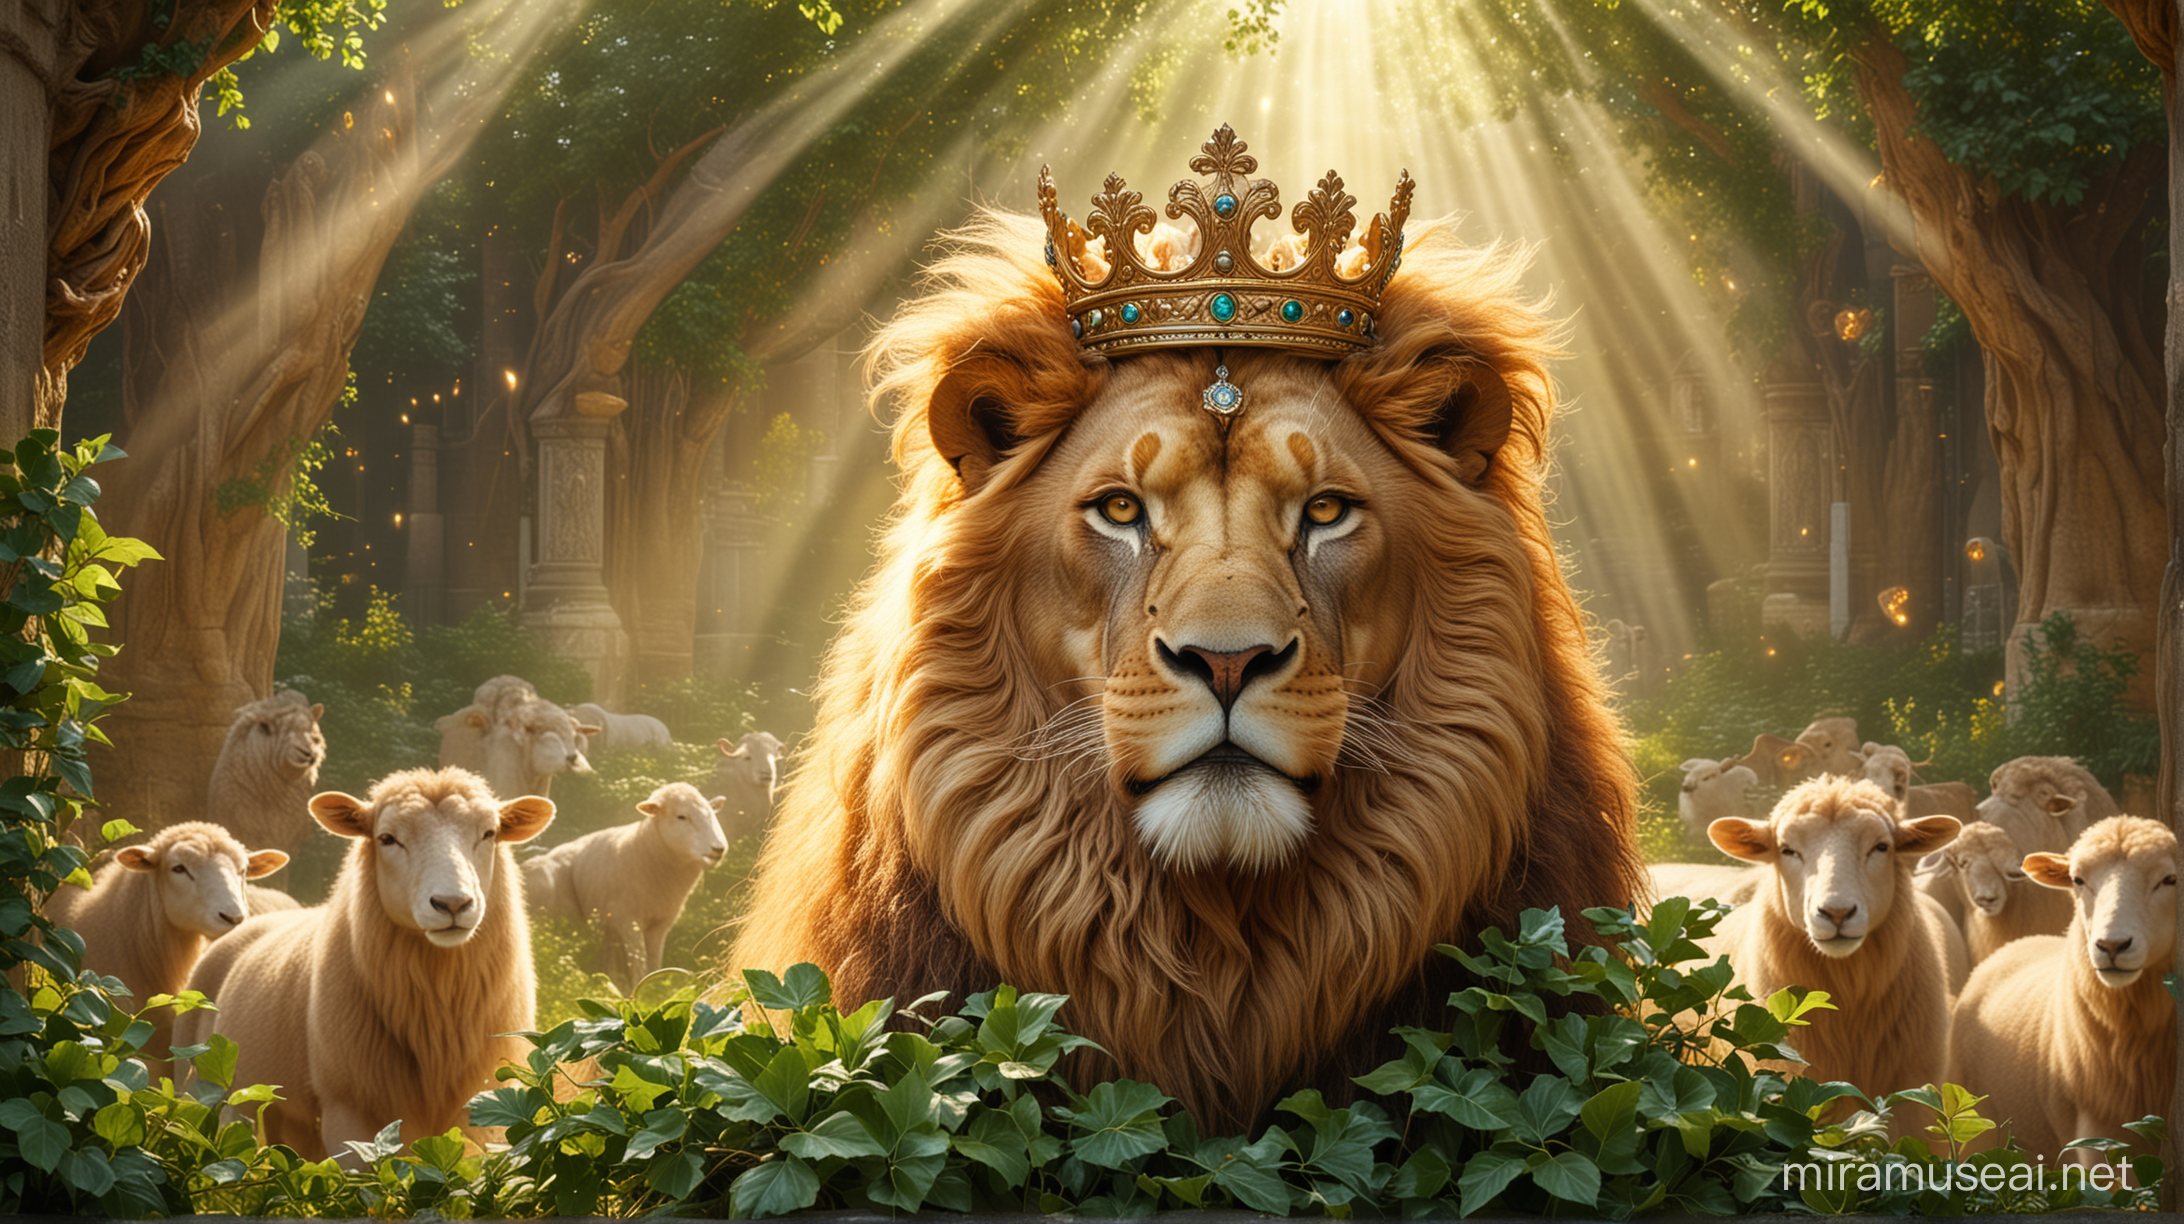 Taivaallinentausta. Kuninkaallinen koristeellinen loistava, kirkas, hohtava kultakruunu. Valonsäteitä. Leijona kuvan taustalla. Suuri aikuinen lammas leijonan vieressä. Vihreitä lehtiä.